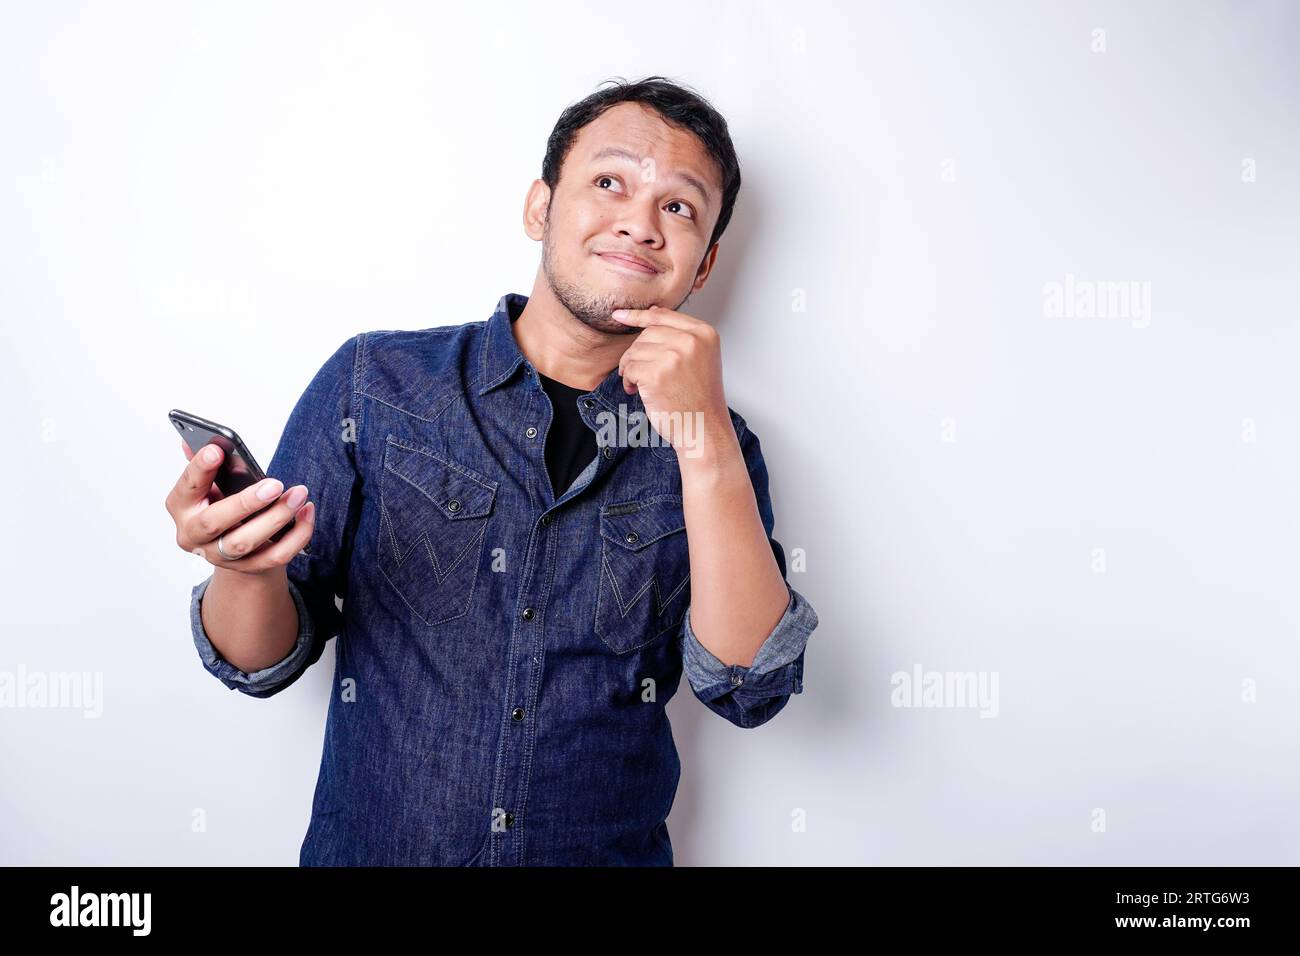 Ein nachdenklicher junger Mann, der in einem blauen Hemd gekleidet ist, während er sein Telefon mit dem weißen Hintergrund abhält Stockfoto